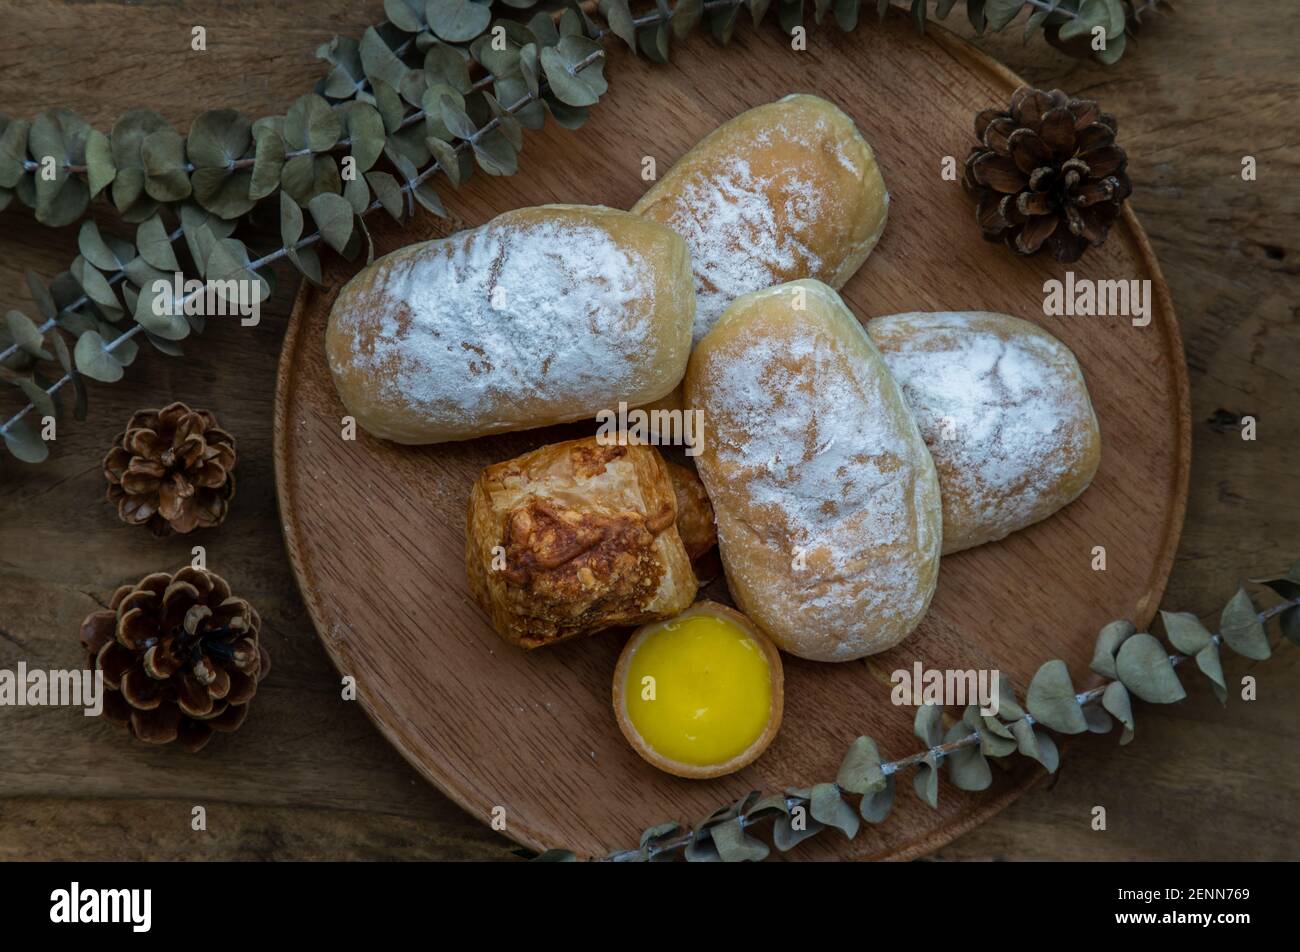 Hausgemachte süße Sahne-Softbrötchen, gebackene Croissant-Wurst und Zitronentarte mit getrockneten Blumen auf runden Holzteller auf rustikalem Holzboden. Bäckerei und d Stockfoto